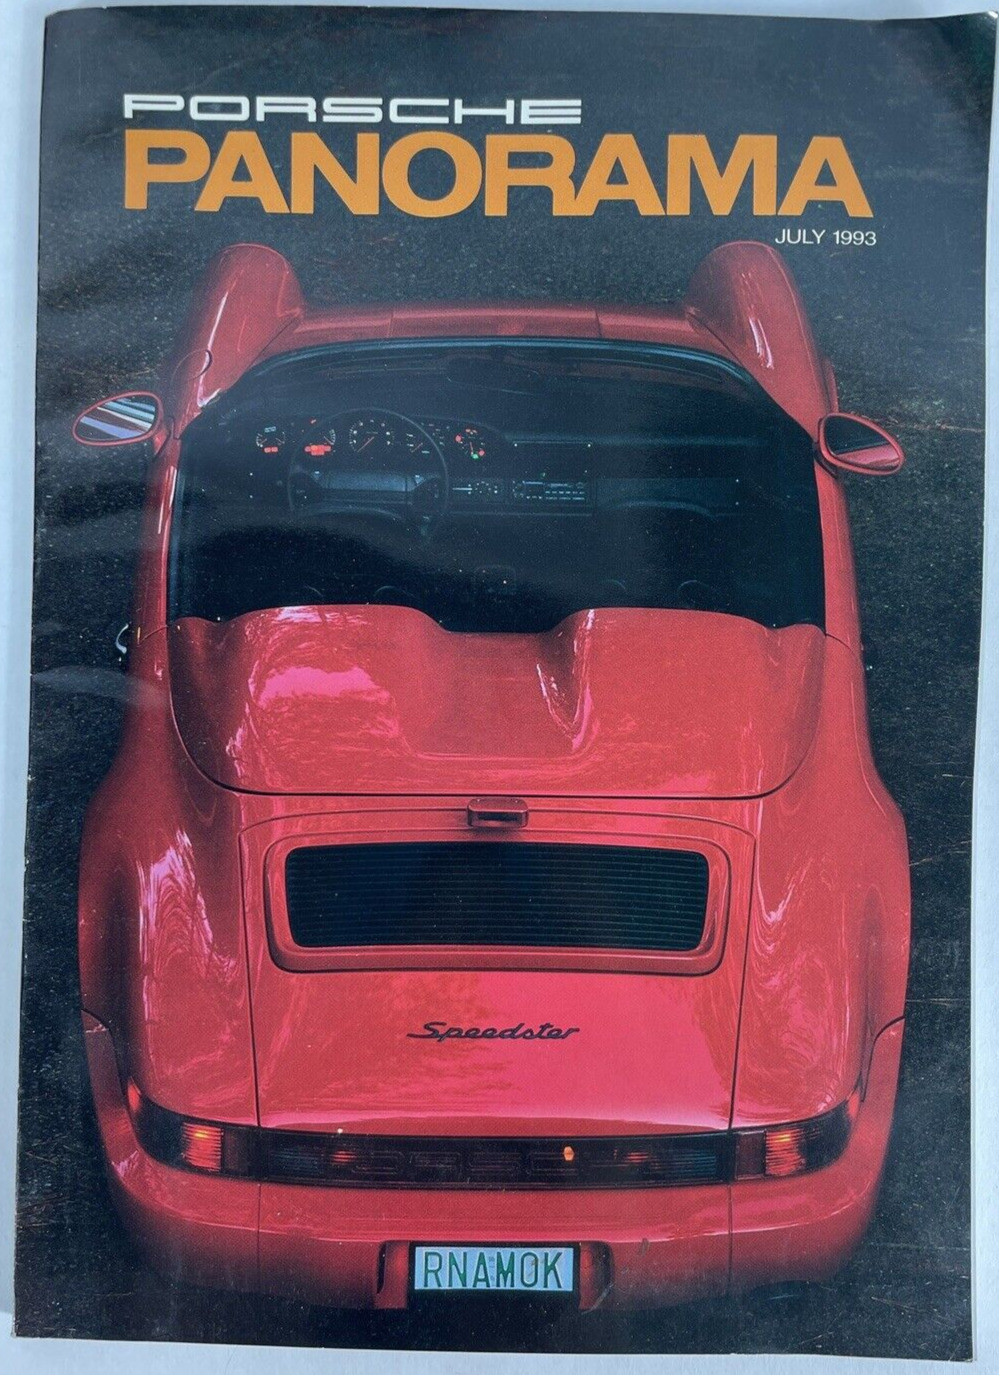 Vintage: Porsche Panorama Magazine July 1993 Volume 38 Number 7